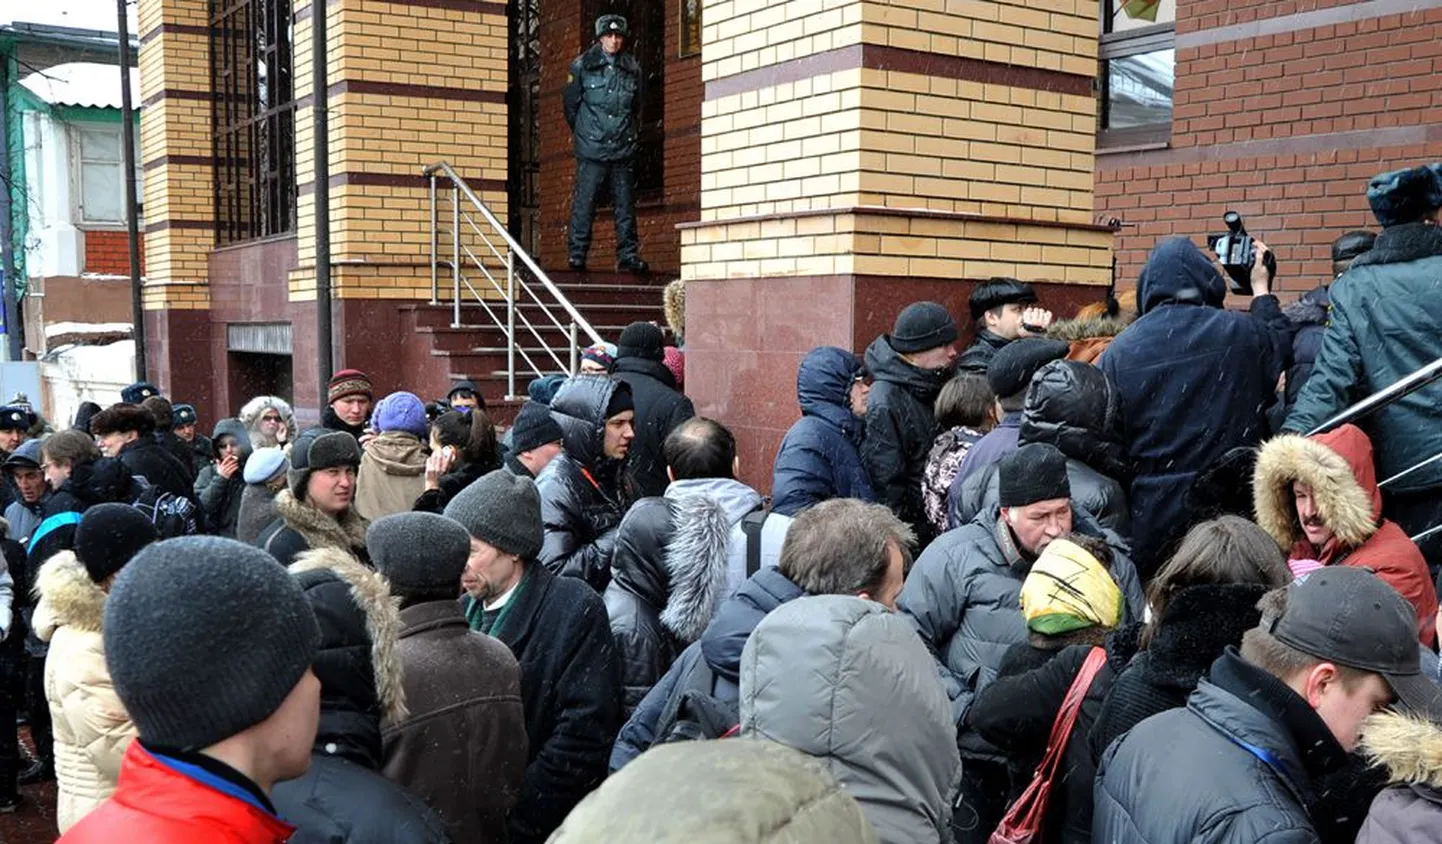 Eelmise nädala kolmapäeval tunglesid Kaasani uurimiskomitee juures politseivägivalla ohvrid või nende sugulased, kes tahtsid Moskvast saabunud uurijatele oma kaebust esitada. Sissepääsu hoidsid kontrolli all kohalikud võimuesindajad.